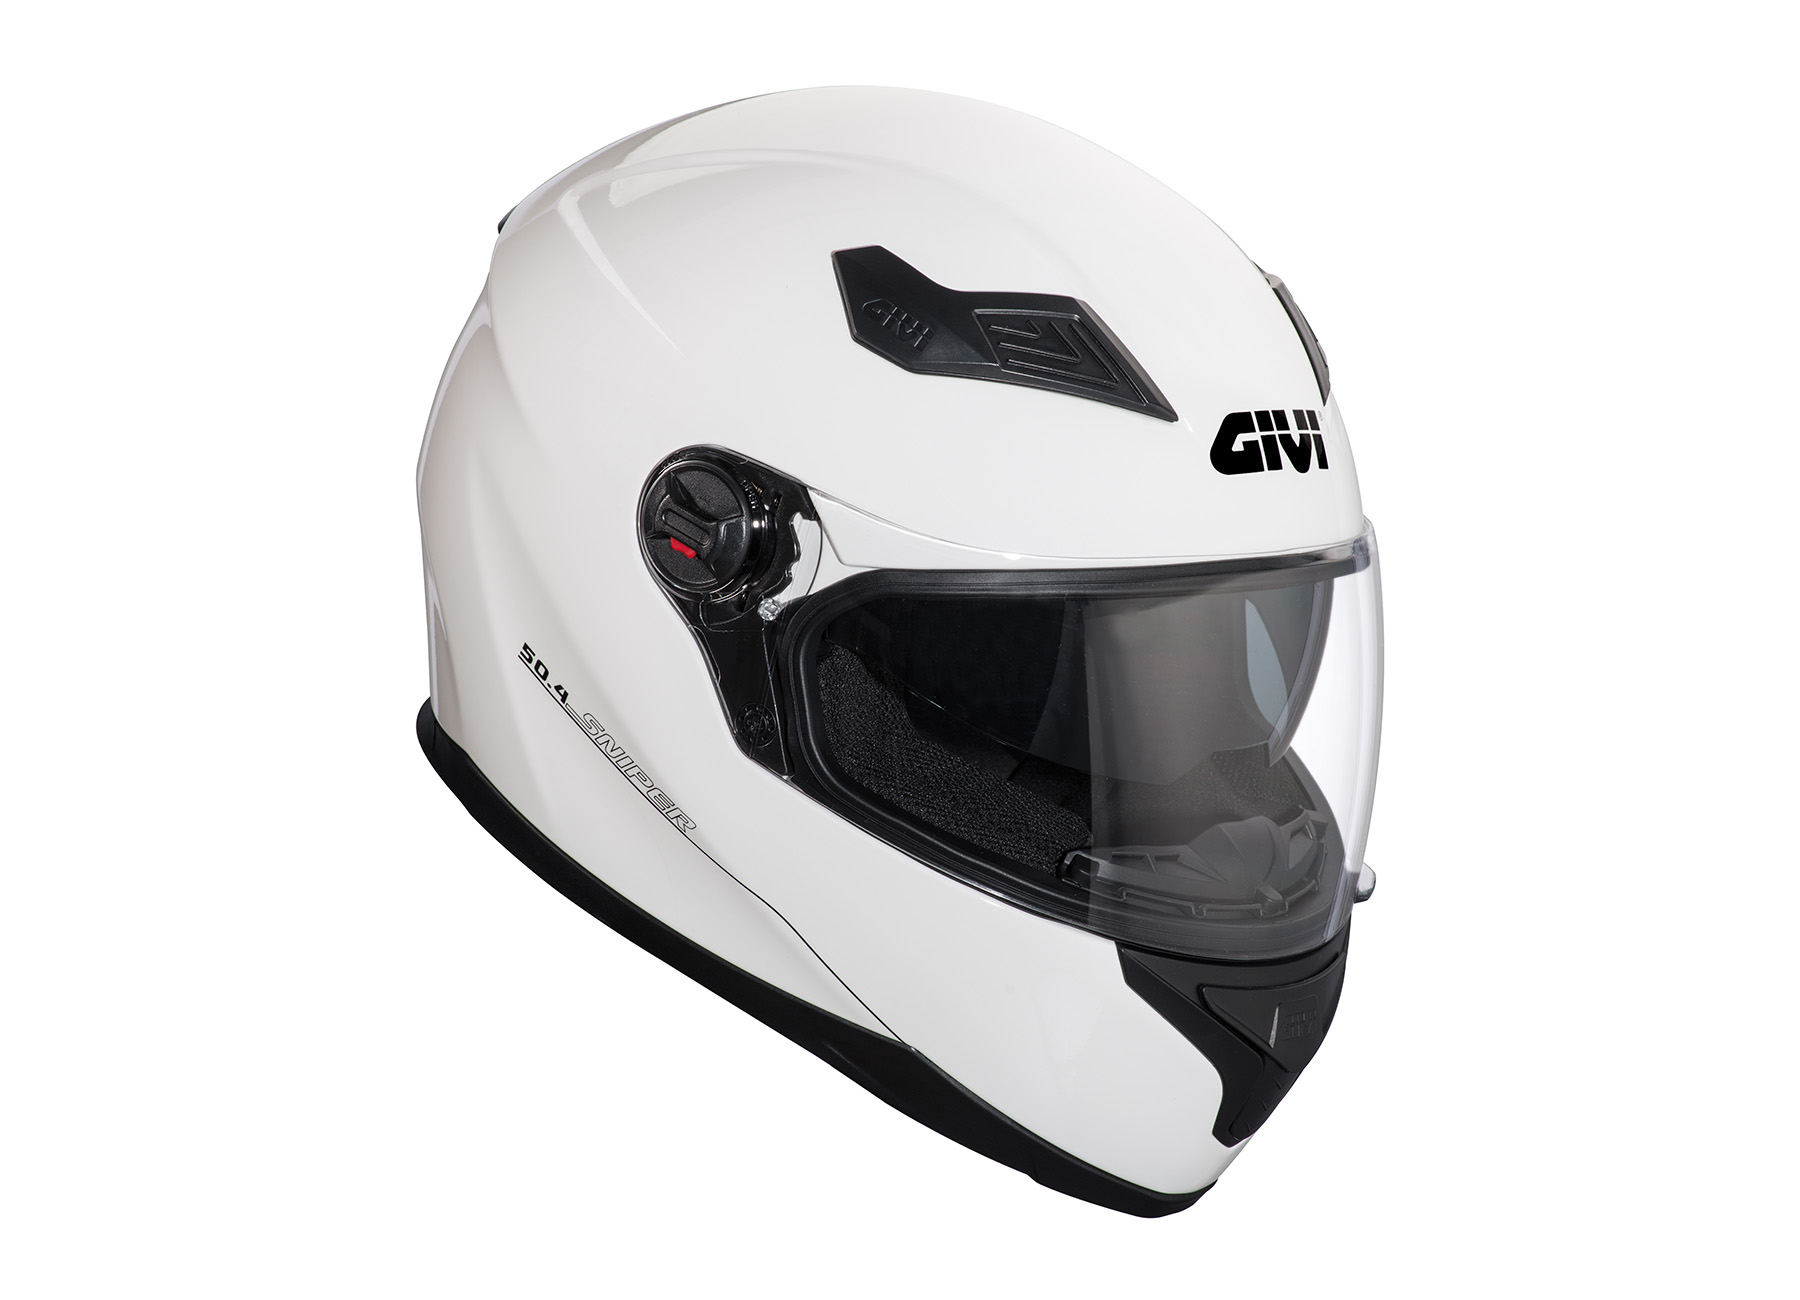 Givi’s new £80 full-face helmet